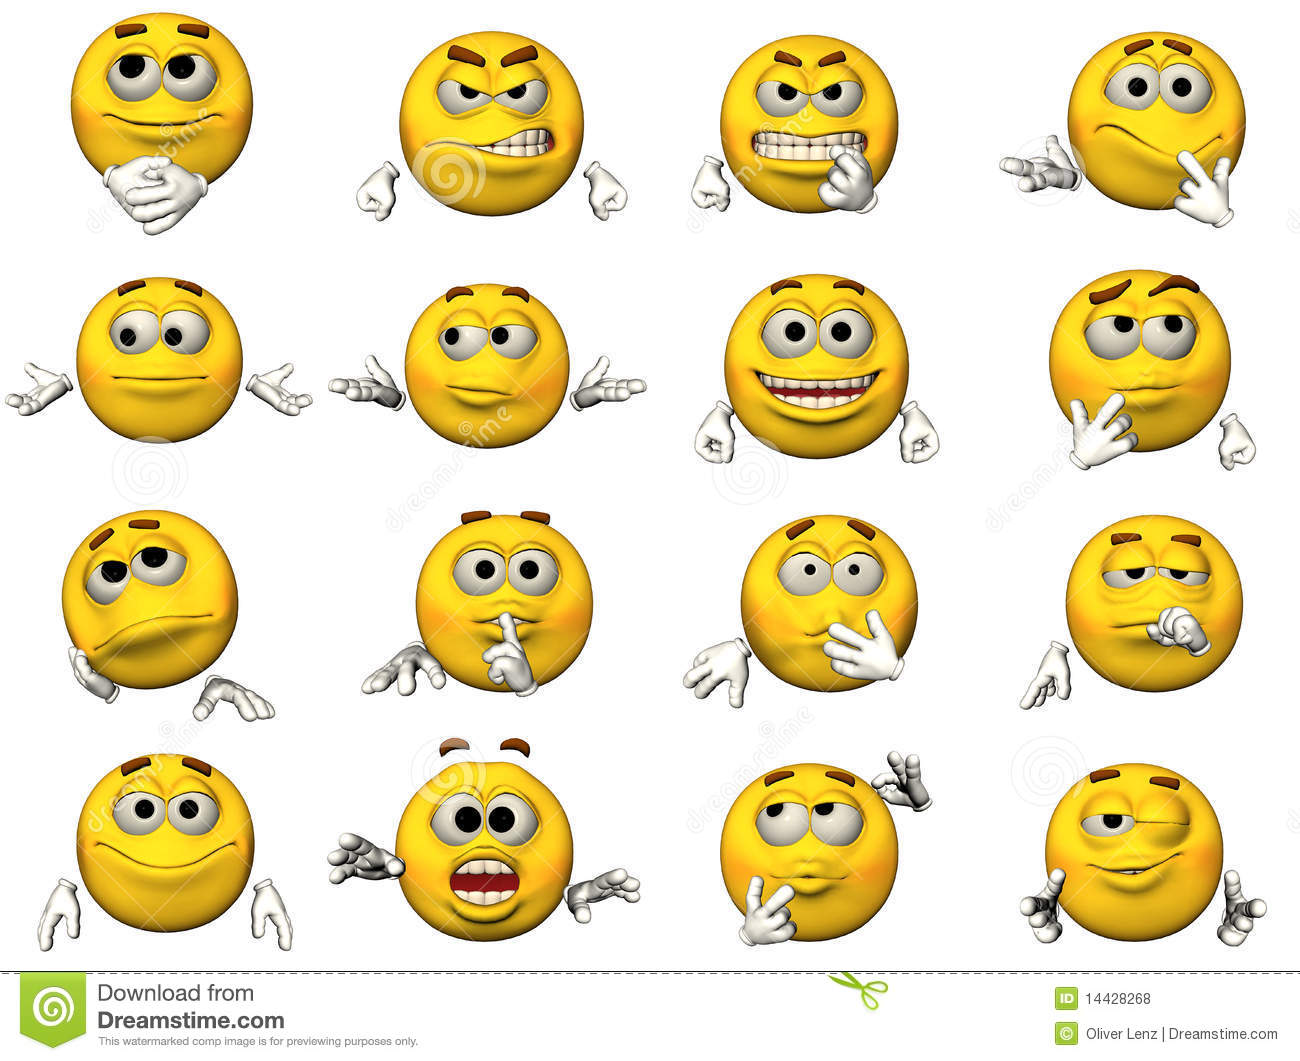 Download Free Smiley Face Emoticon